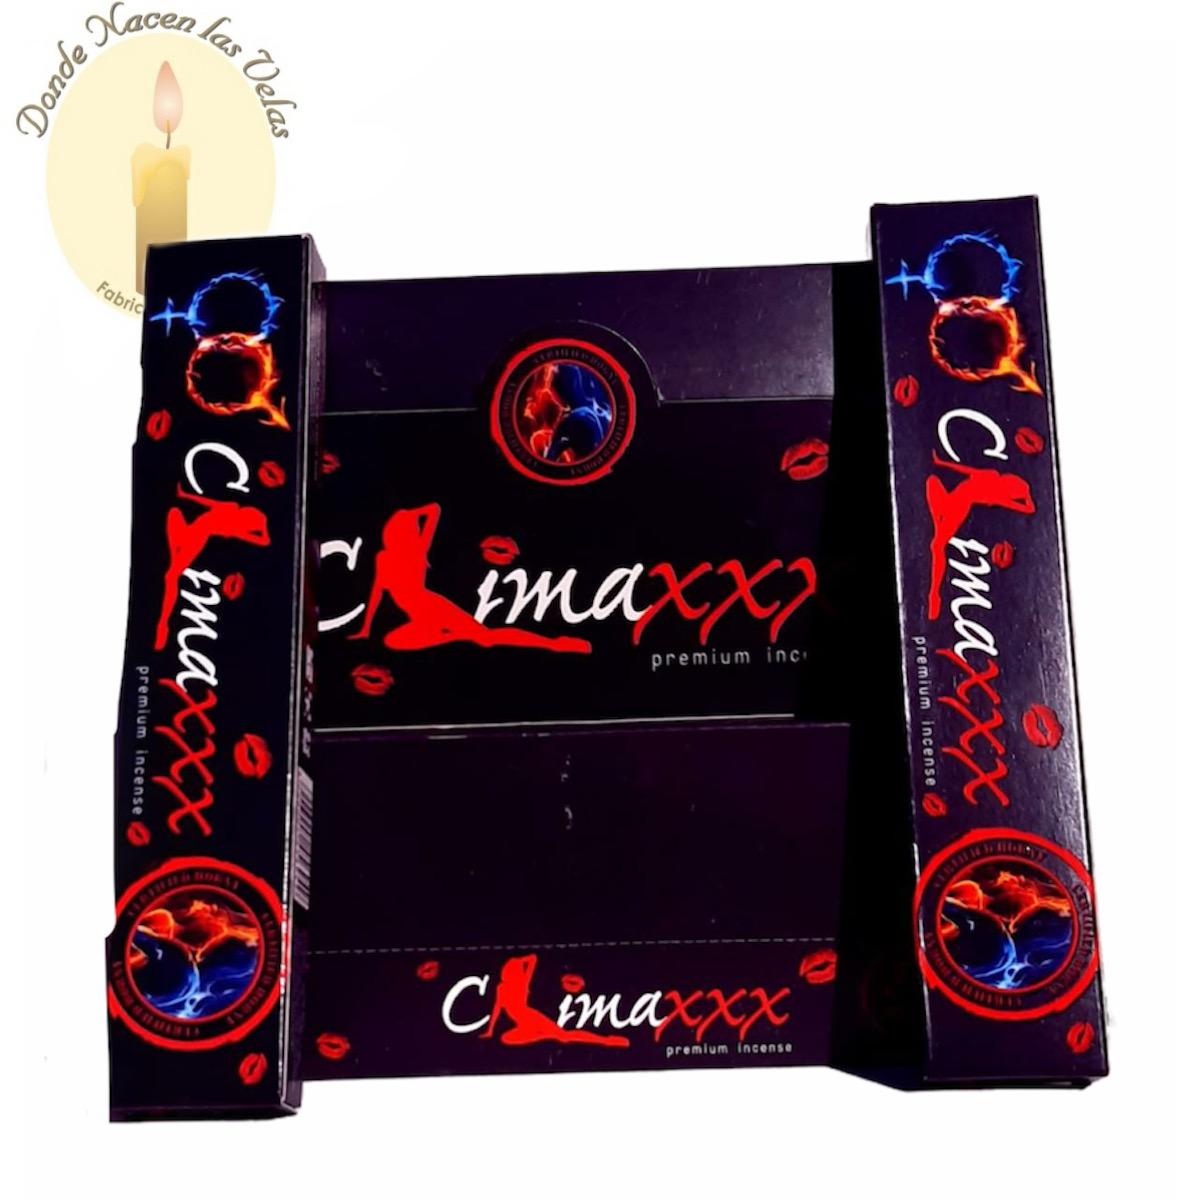 Incienso Climaxxx  (Krishna Perfumes)